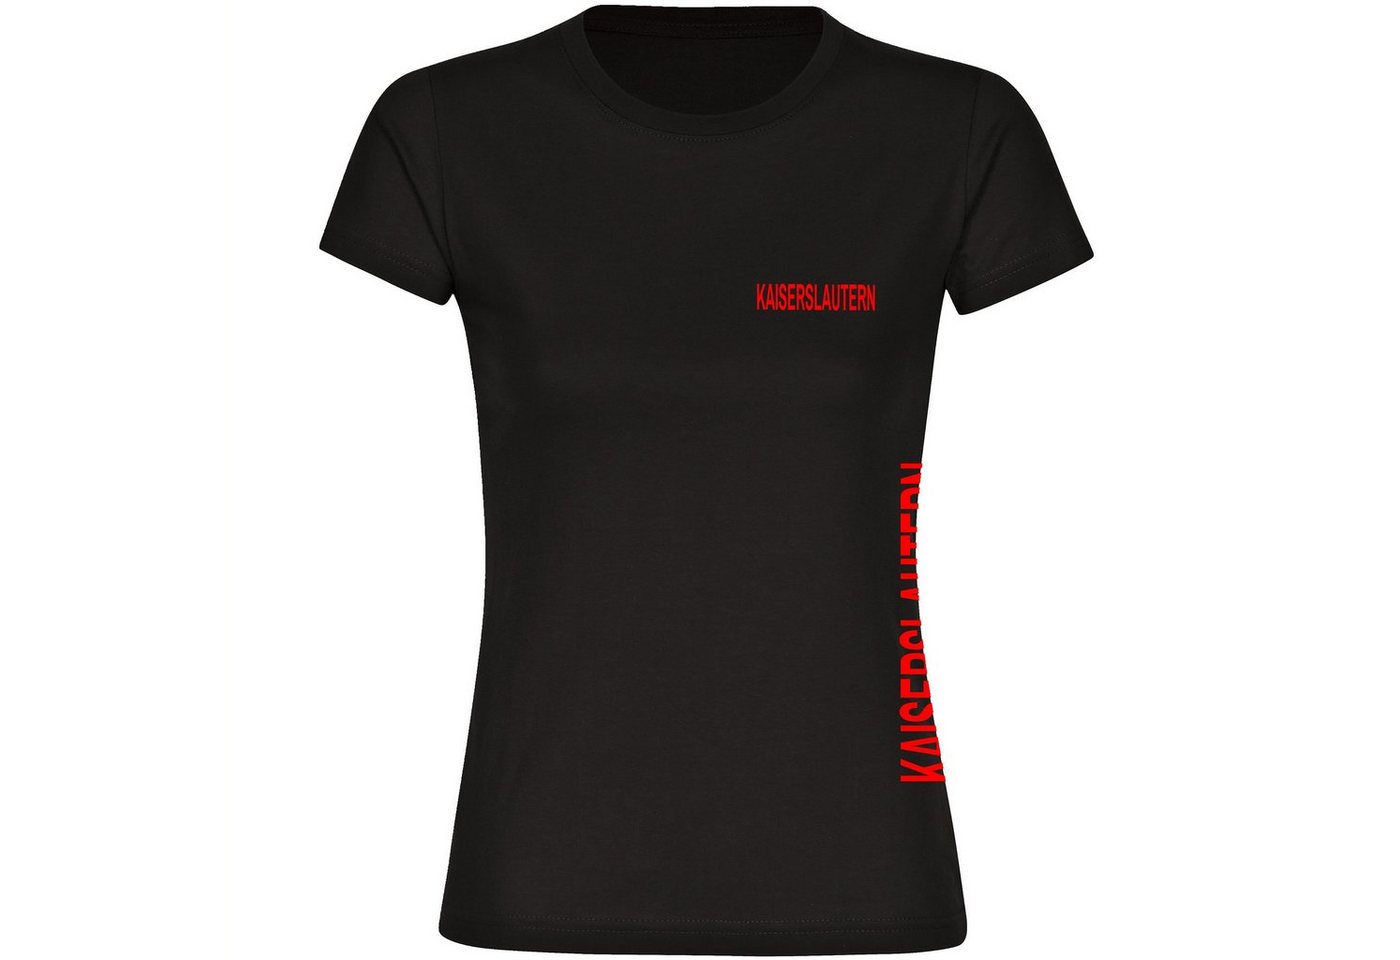 multifanshop T-Shirt Damen Kaiserslautern - Brust & Seite - Frauen von multifanshop